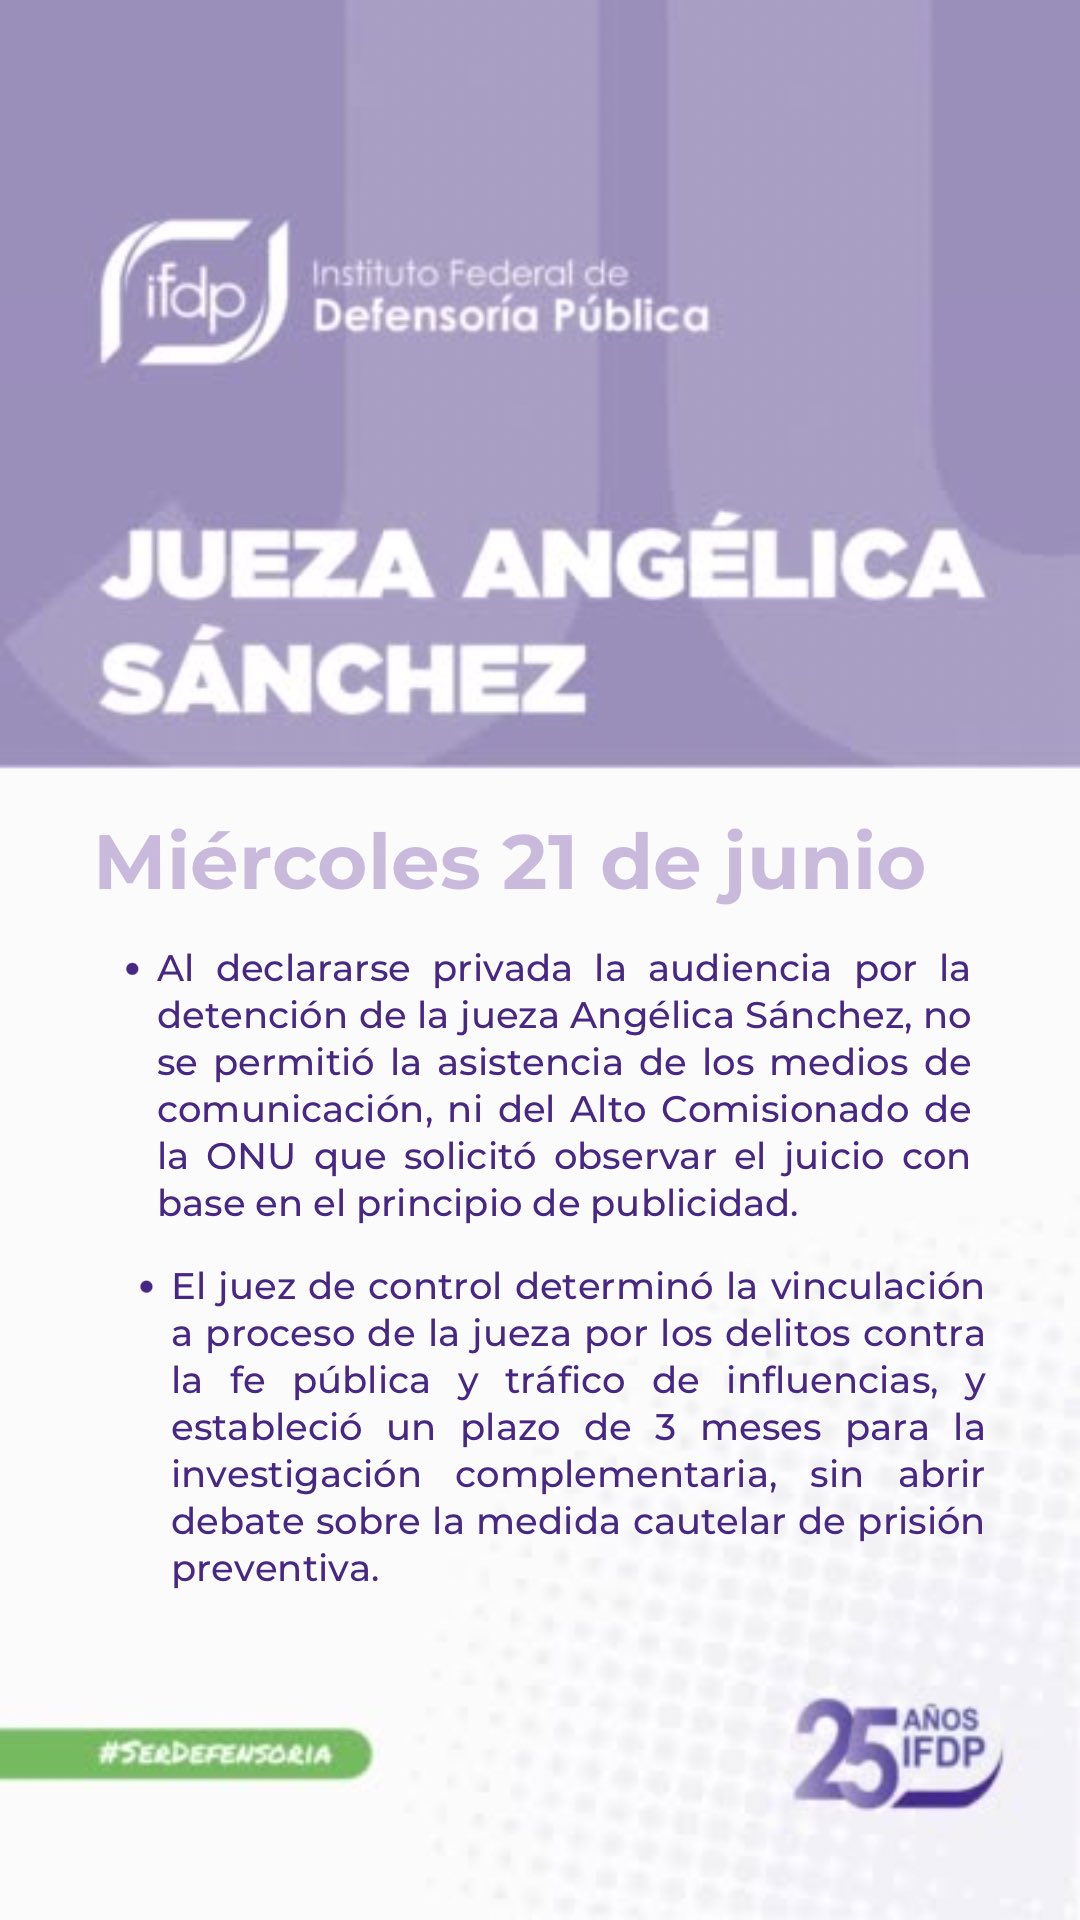 El IFDP dio a conocer que vincularon a proceso a la jueza Angélica Sánchez (Twitter/@defensoriaifdp)